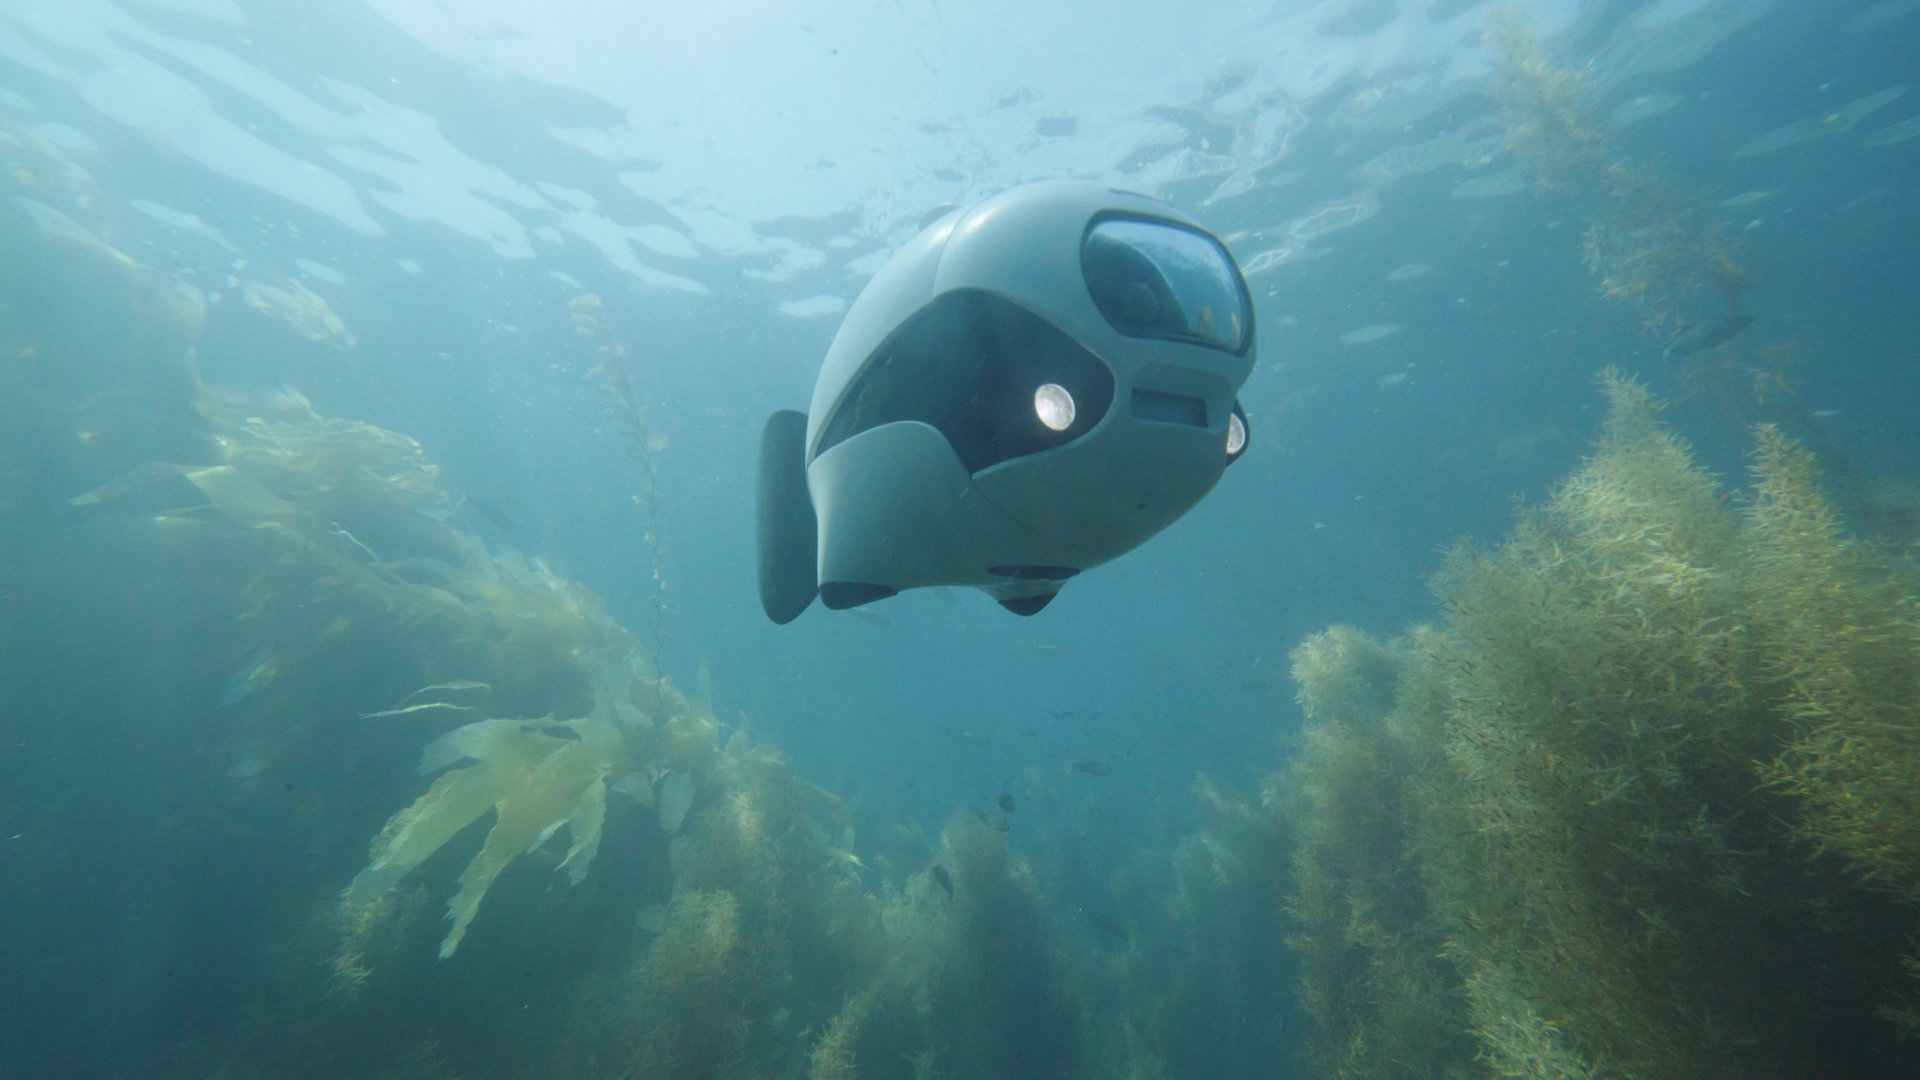 Biki the underwater fish drone (Biki)